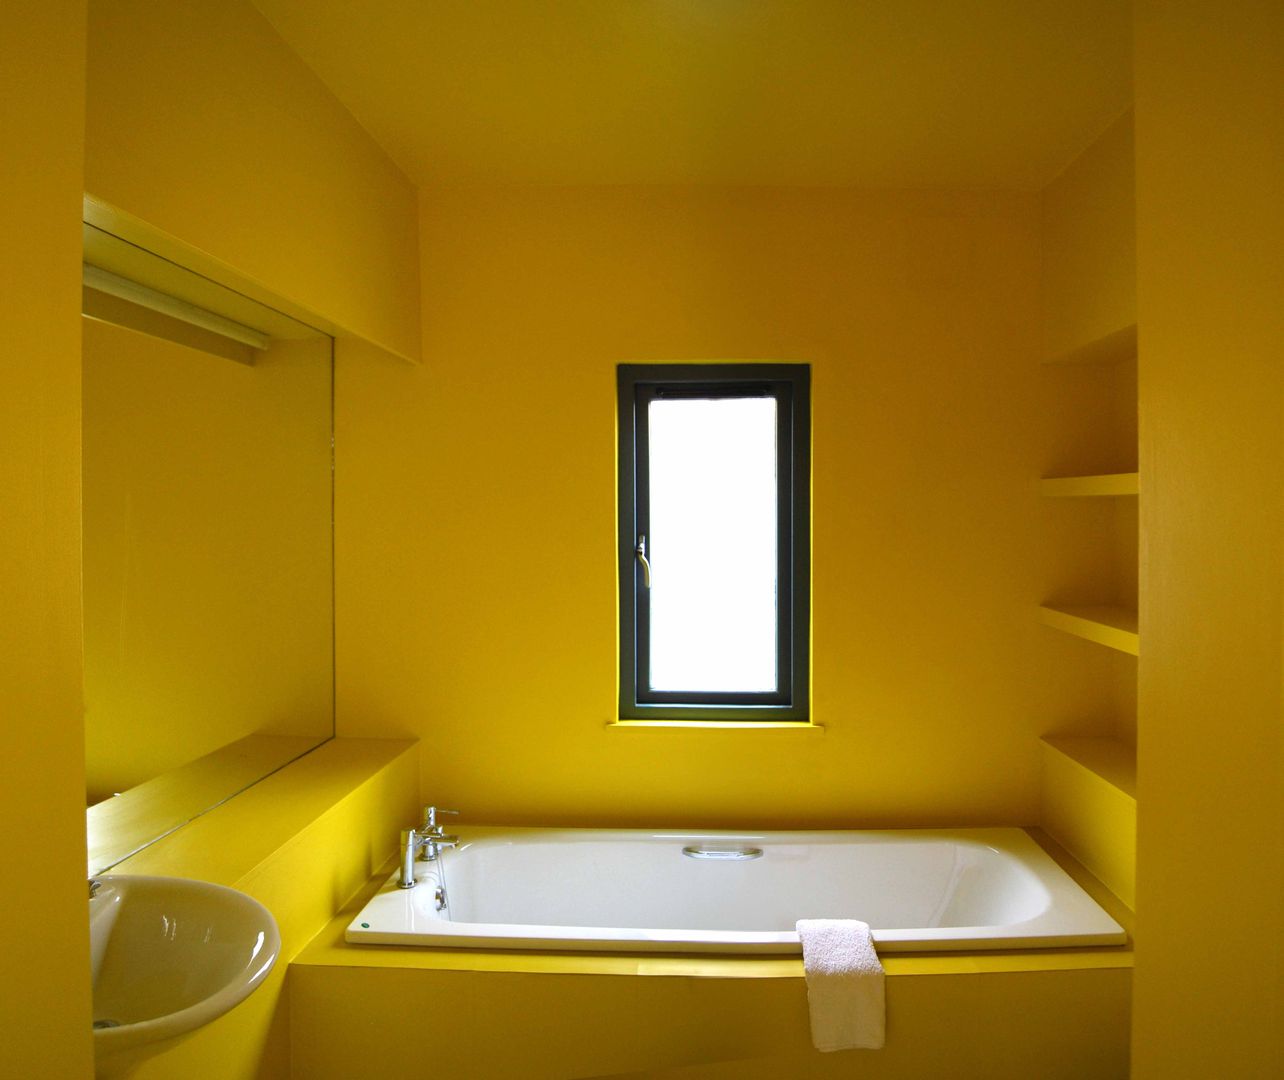 The Yellow Room ROEWUarchitecture モダンスタイルの お風呂 木材・プラスチック複合ボード yellow,bathroom,mood